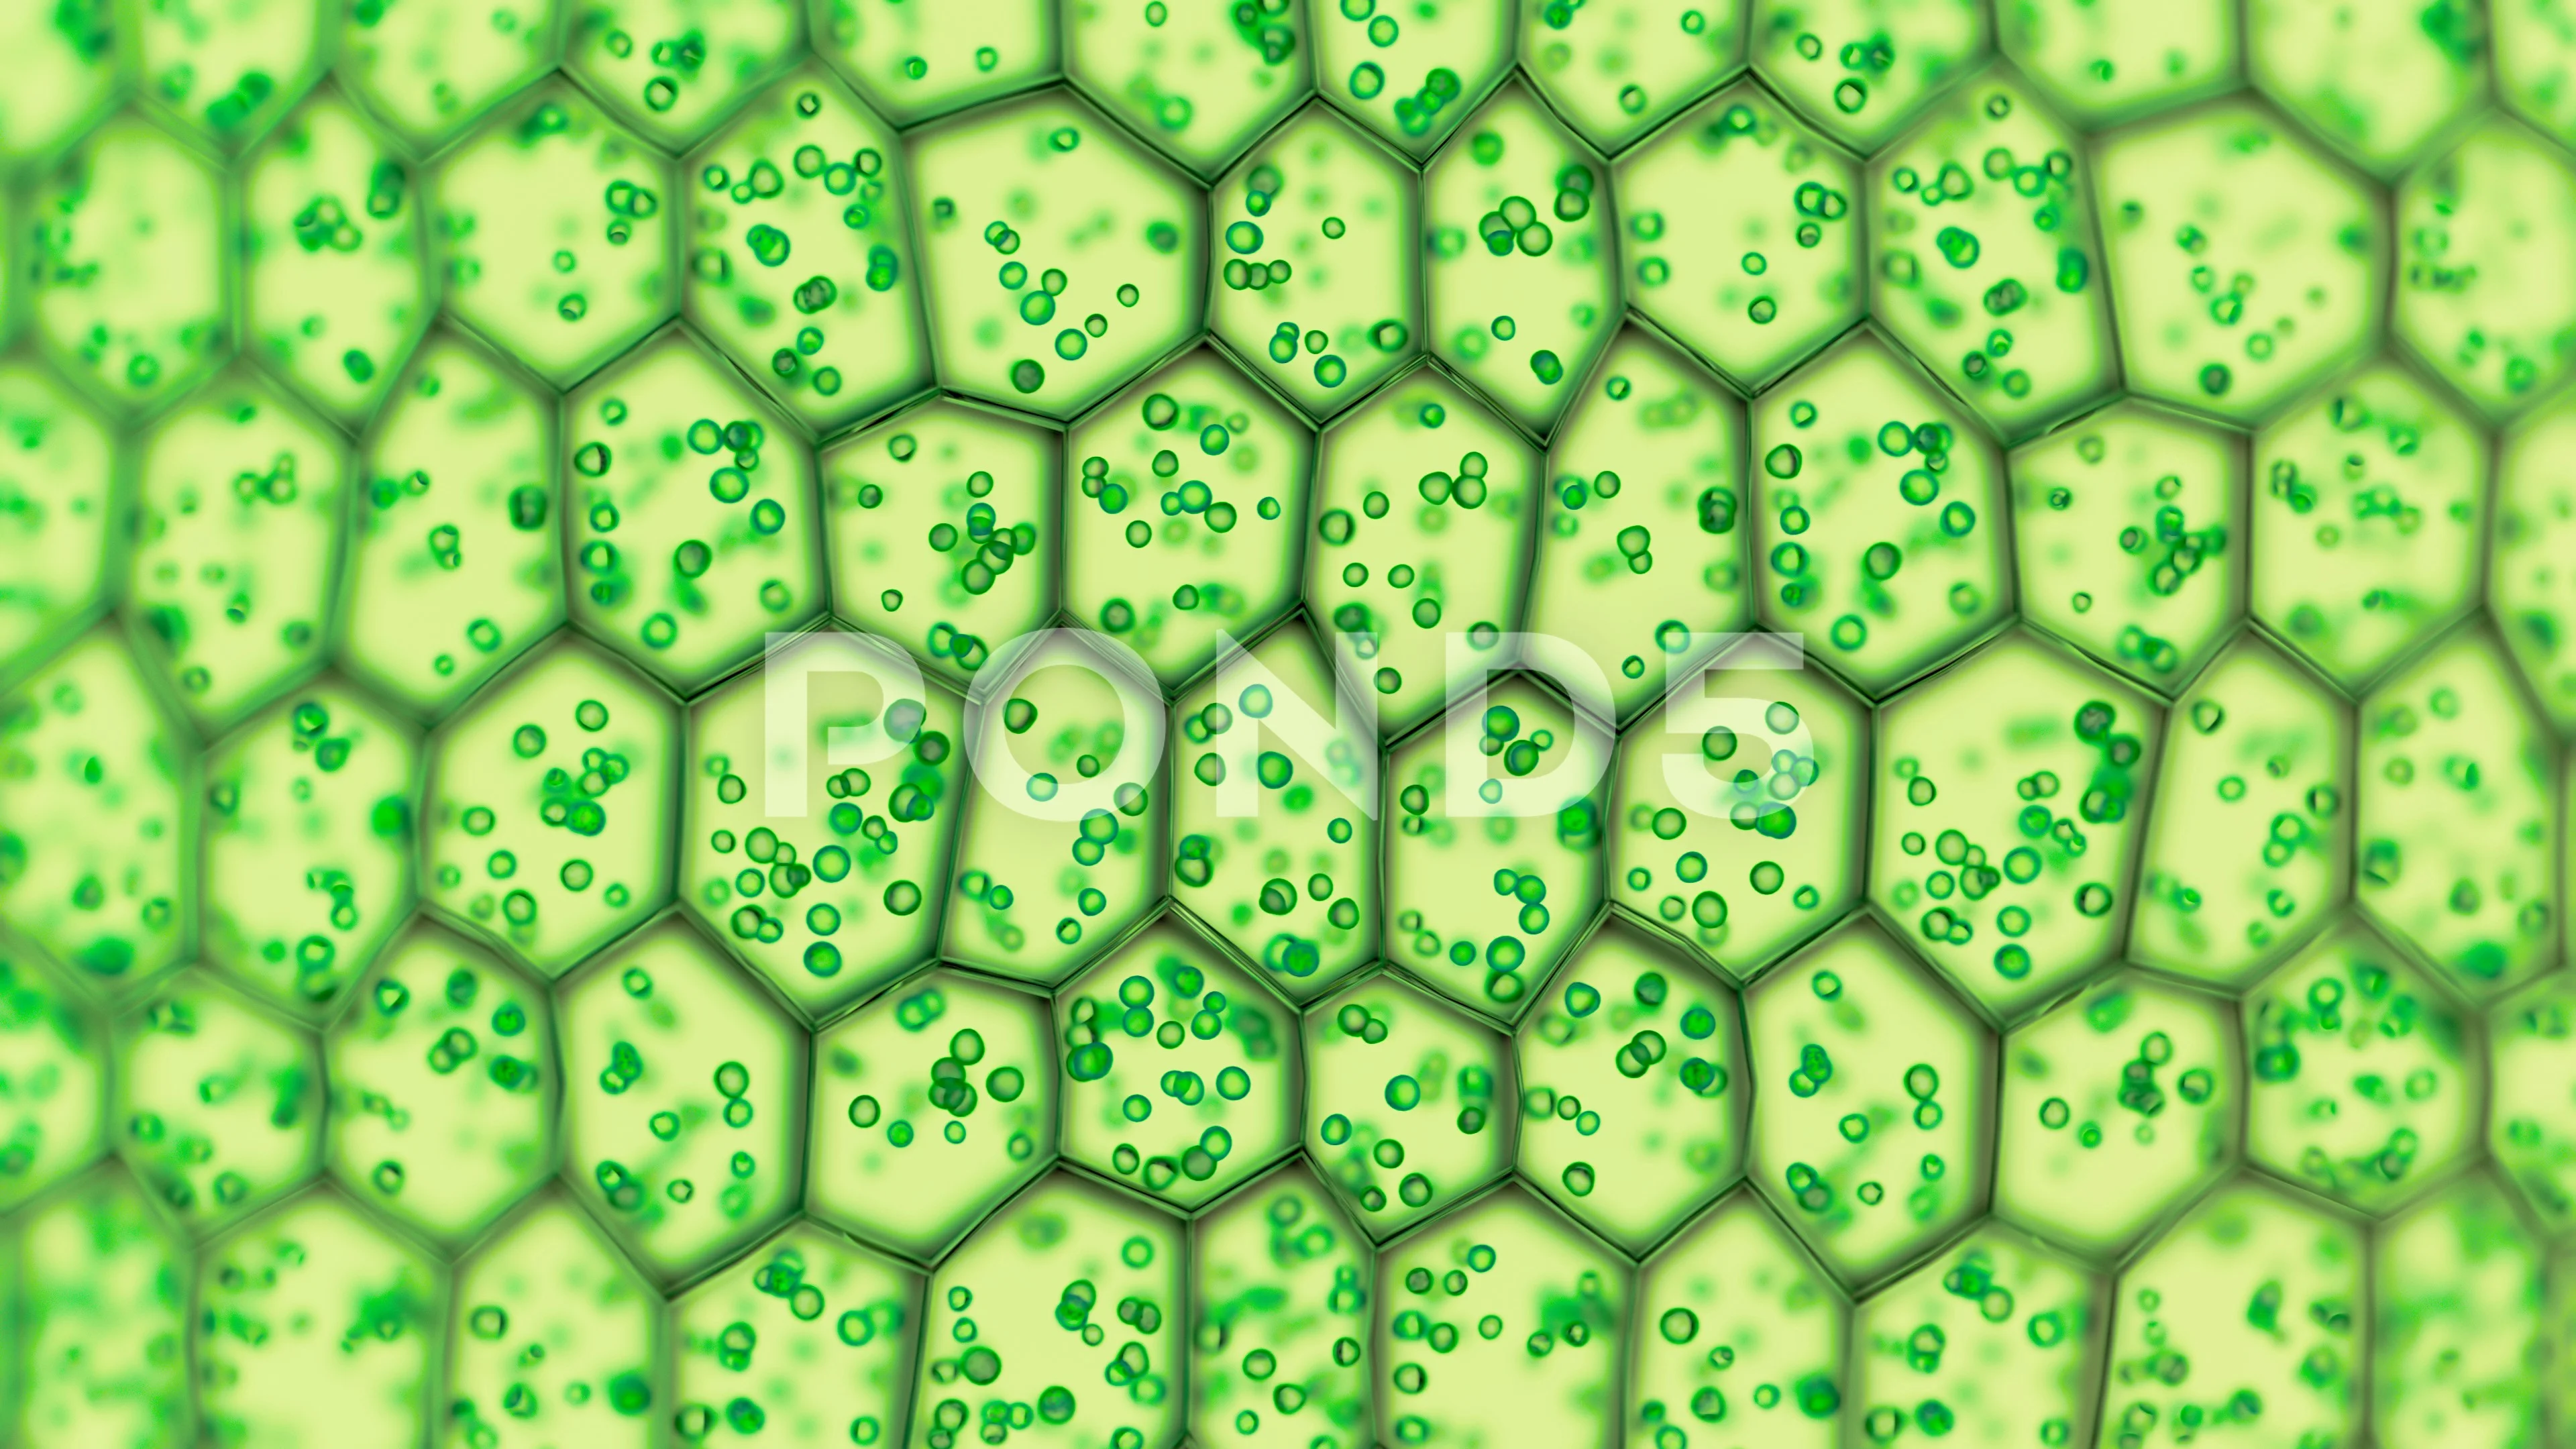 https://images.pond5.com/generic-green-plant-cells-under-footage-126308055_prevstill.jpeg